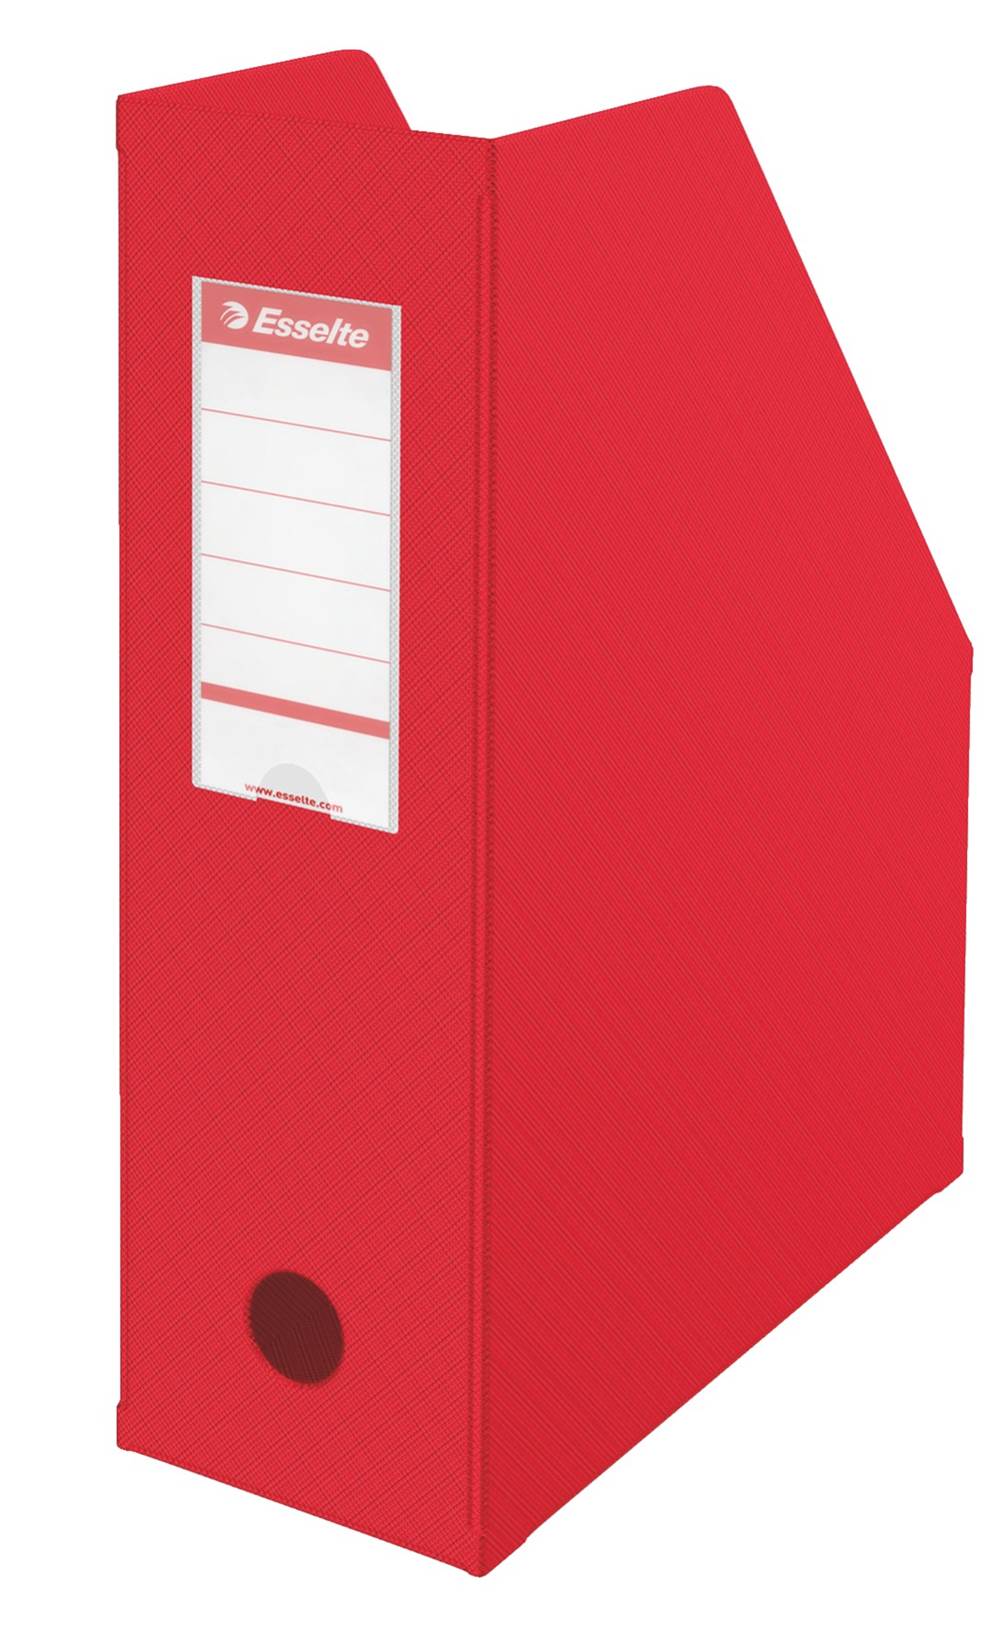 Pojemnik składany Esselte, A4, szer. grzbietu 100 mm, czerwony